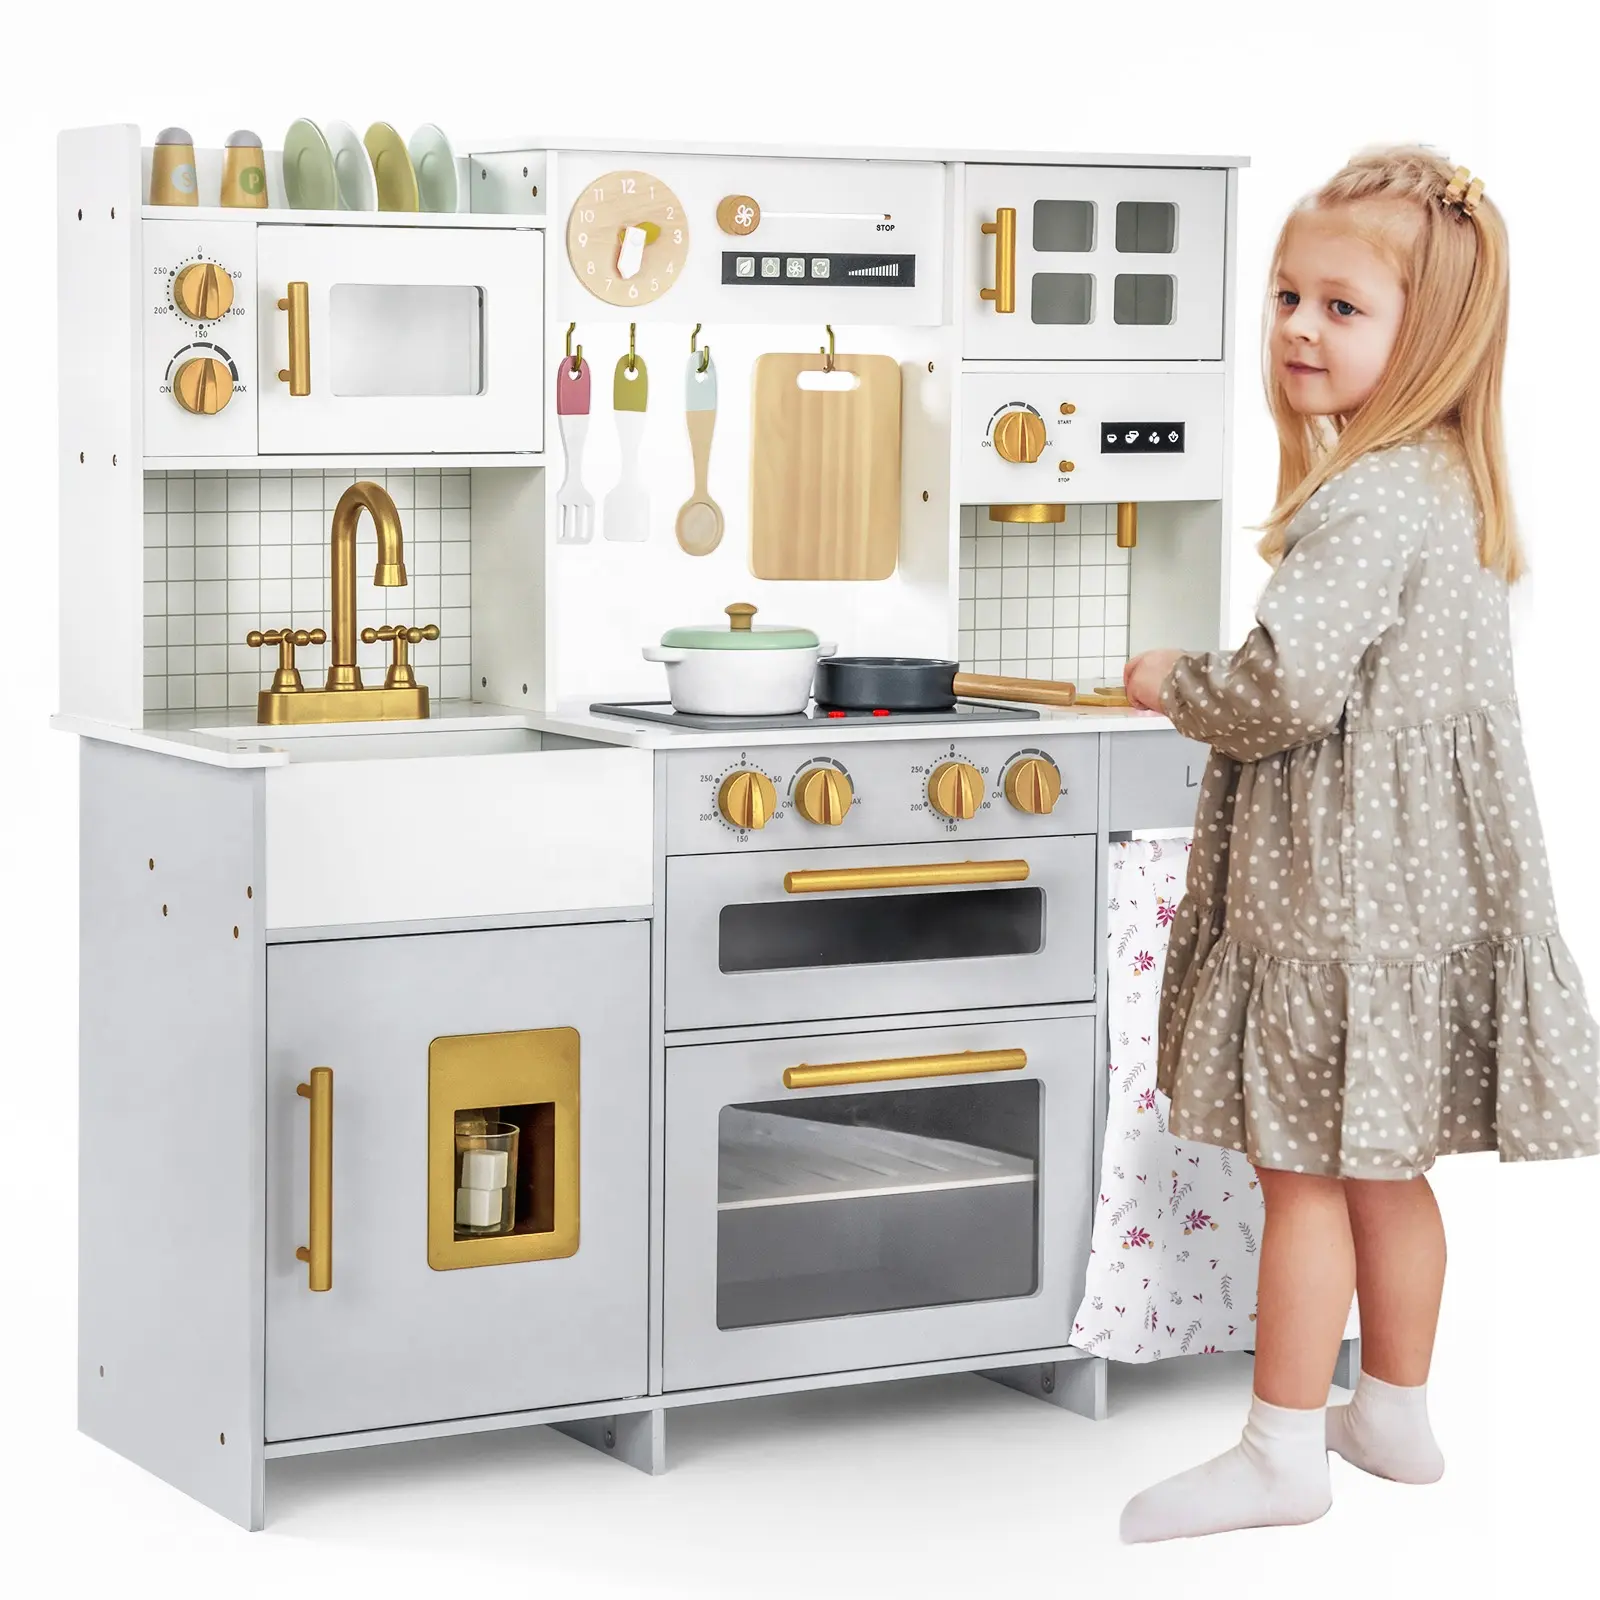 Set peralatan memasak simulasi bayi, mainan dapur kayu untuk memasak setiap anak laki-laki dan perempuan